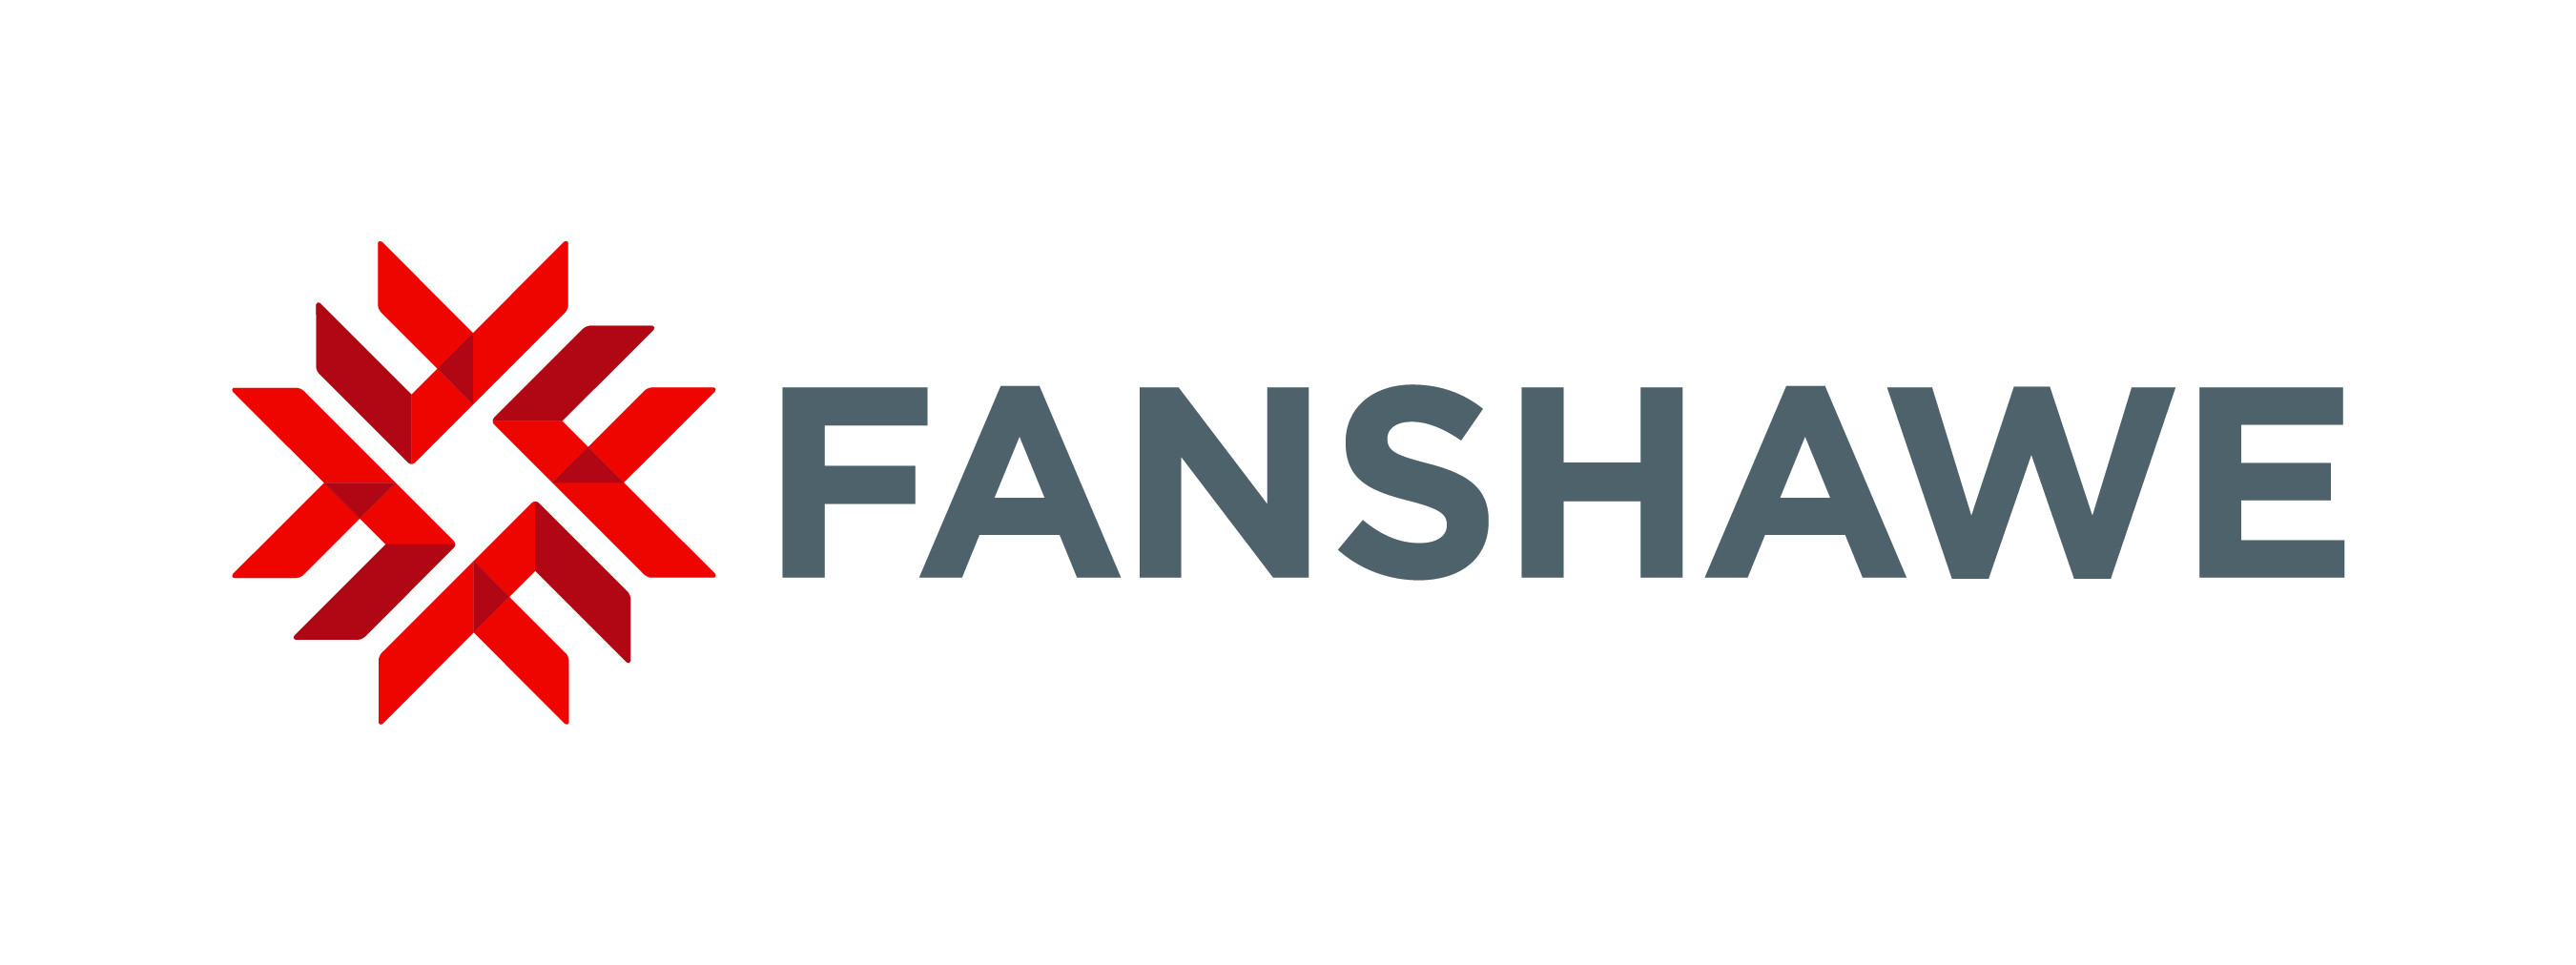 Fanshawe College - logo